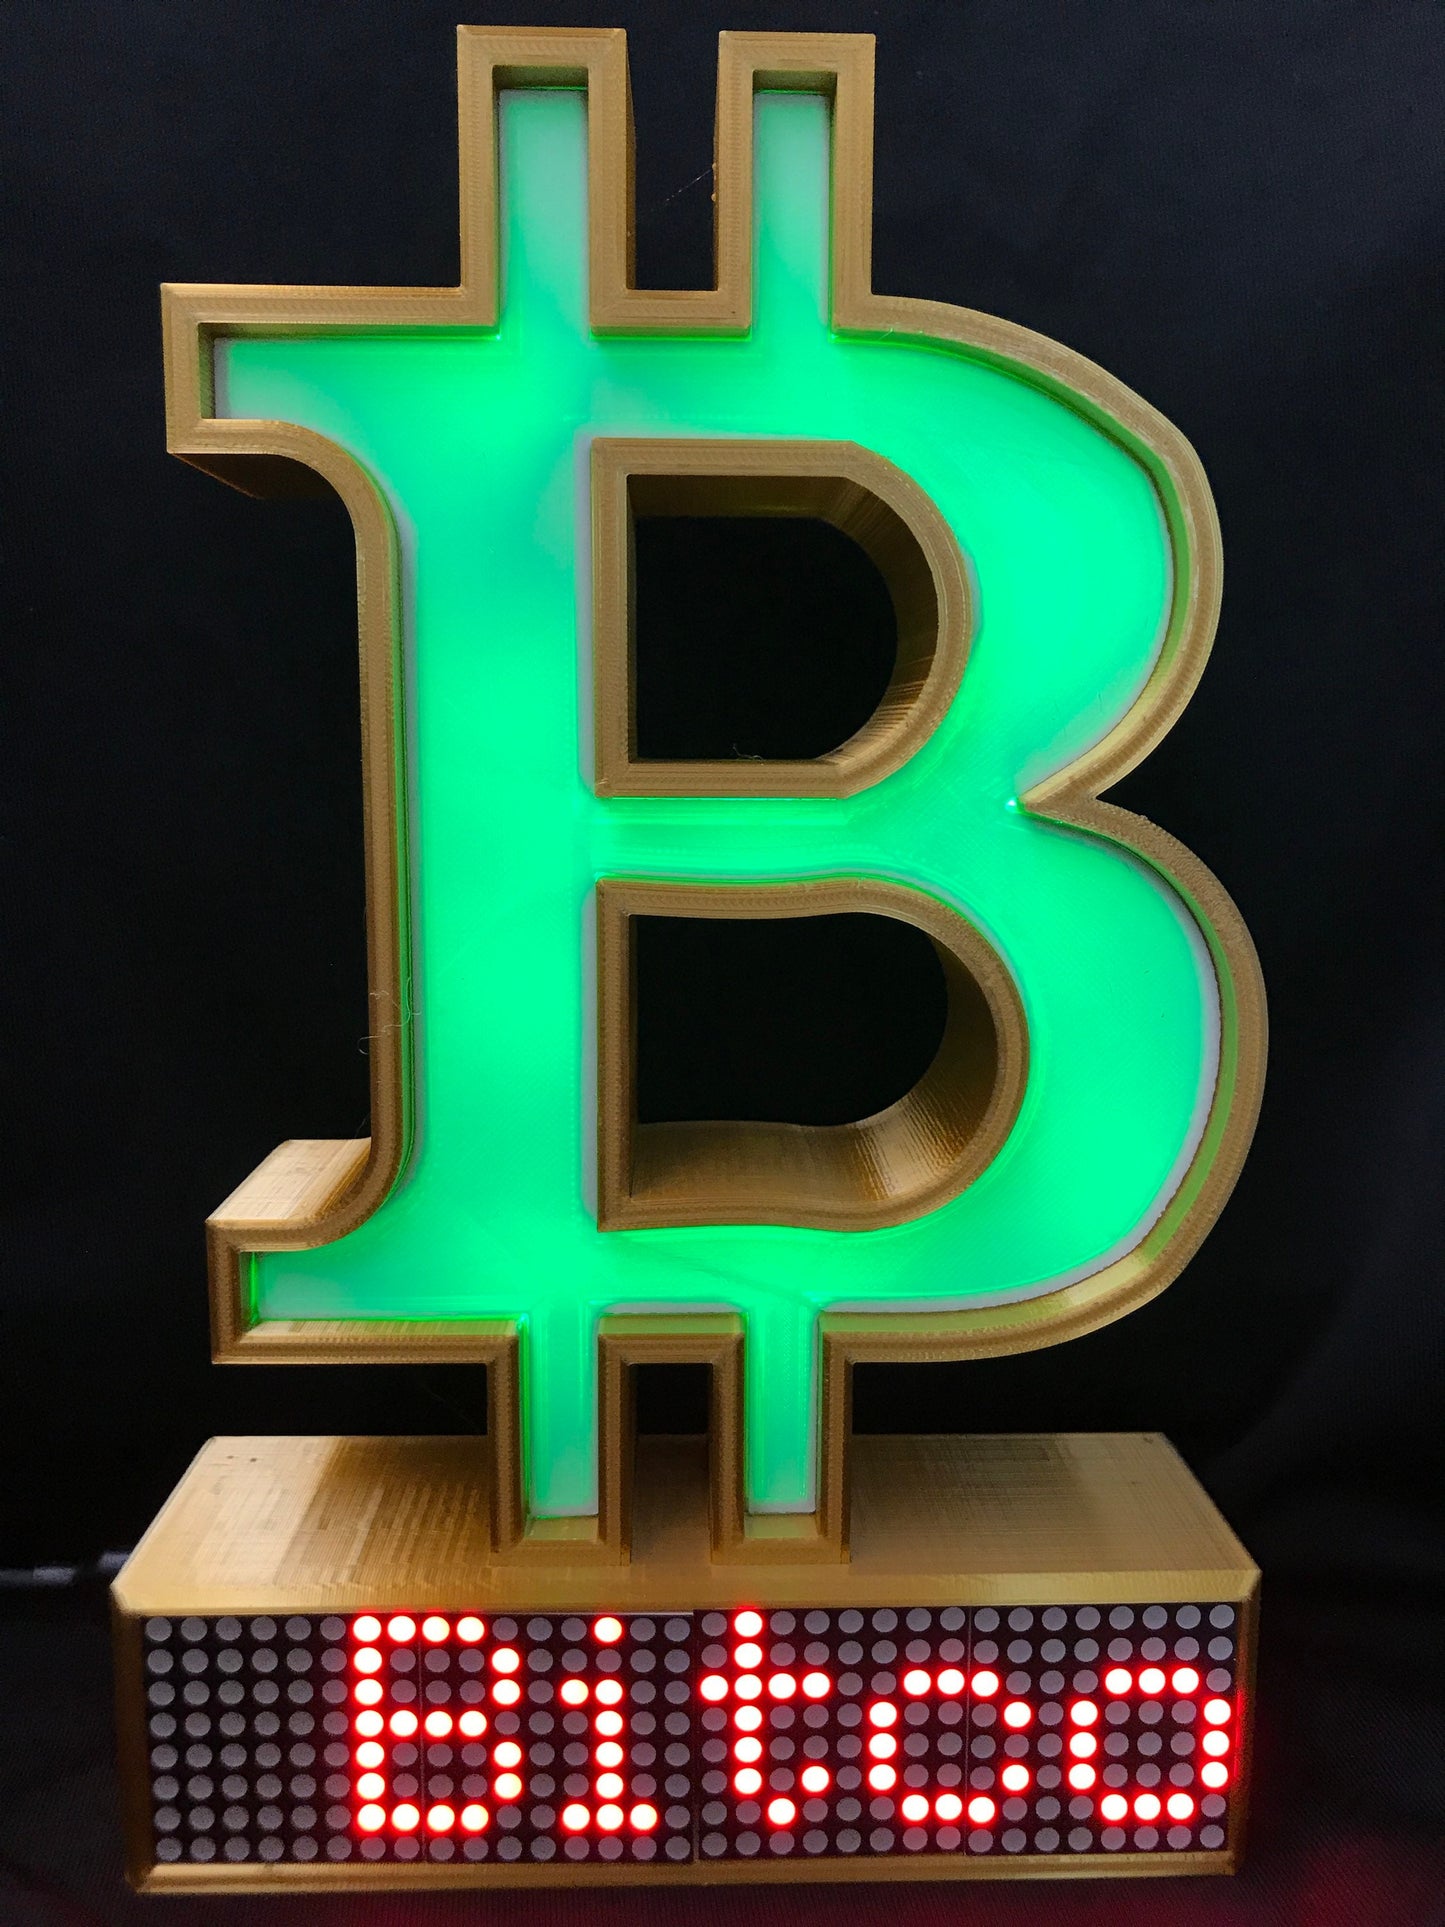 Bitcoin Crypto Coin Price Ticker Matrix Display Wi-Fi - Crypto Coin Display